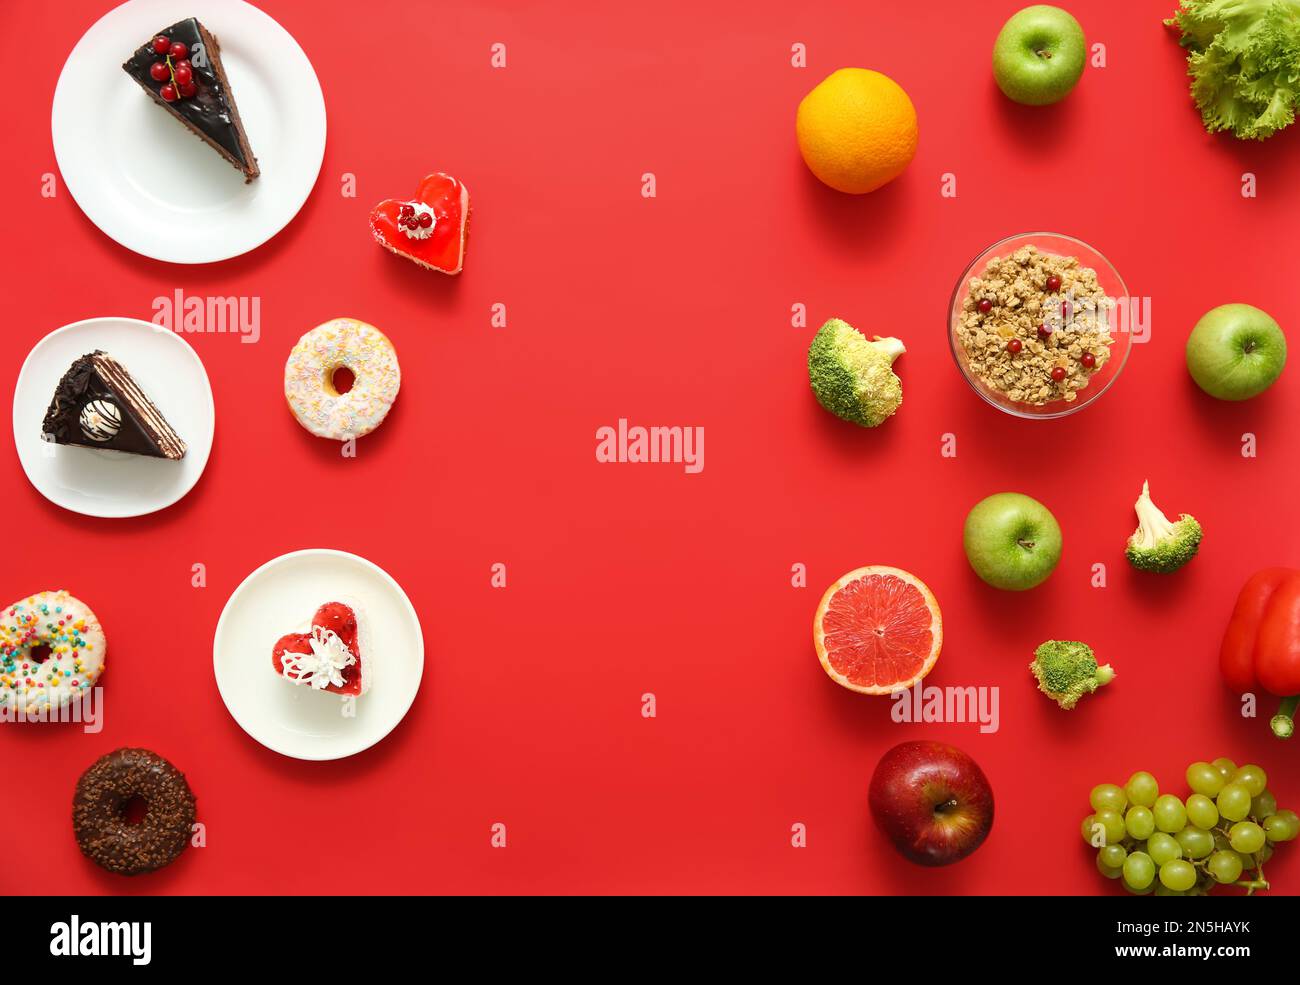 Concepto de elección. Composición plana con dulces y comida saludable sobre fondo rojo Foto de stock